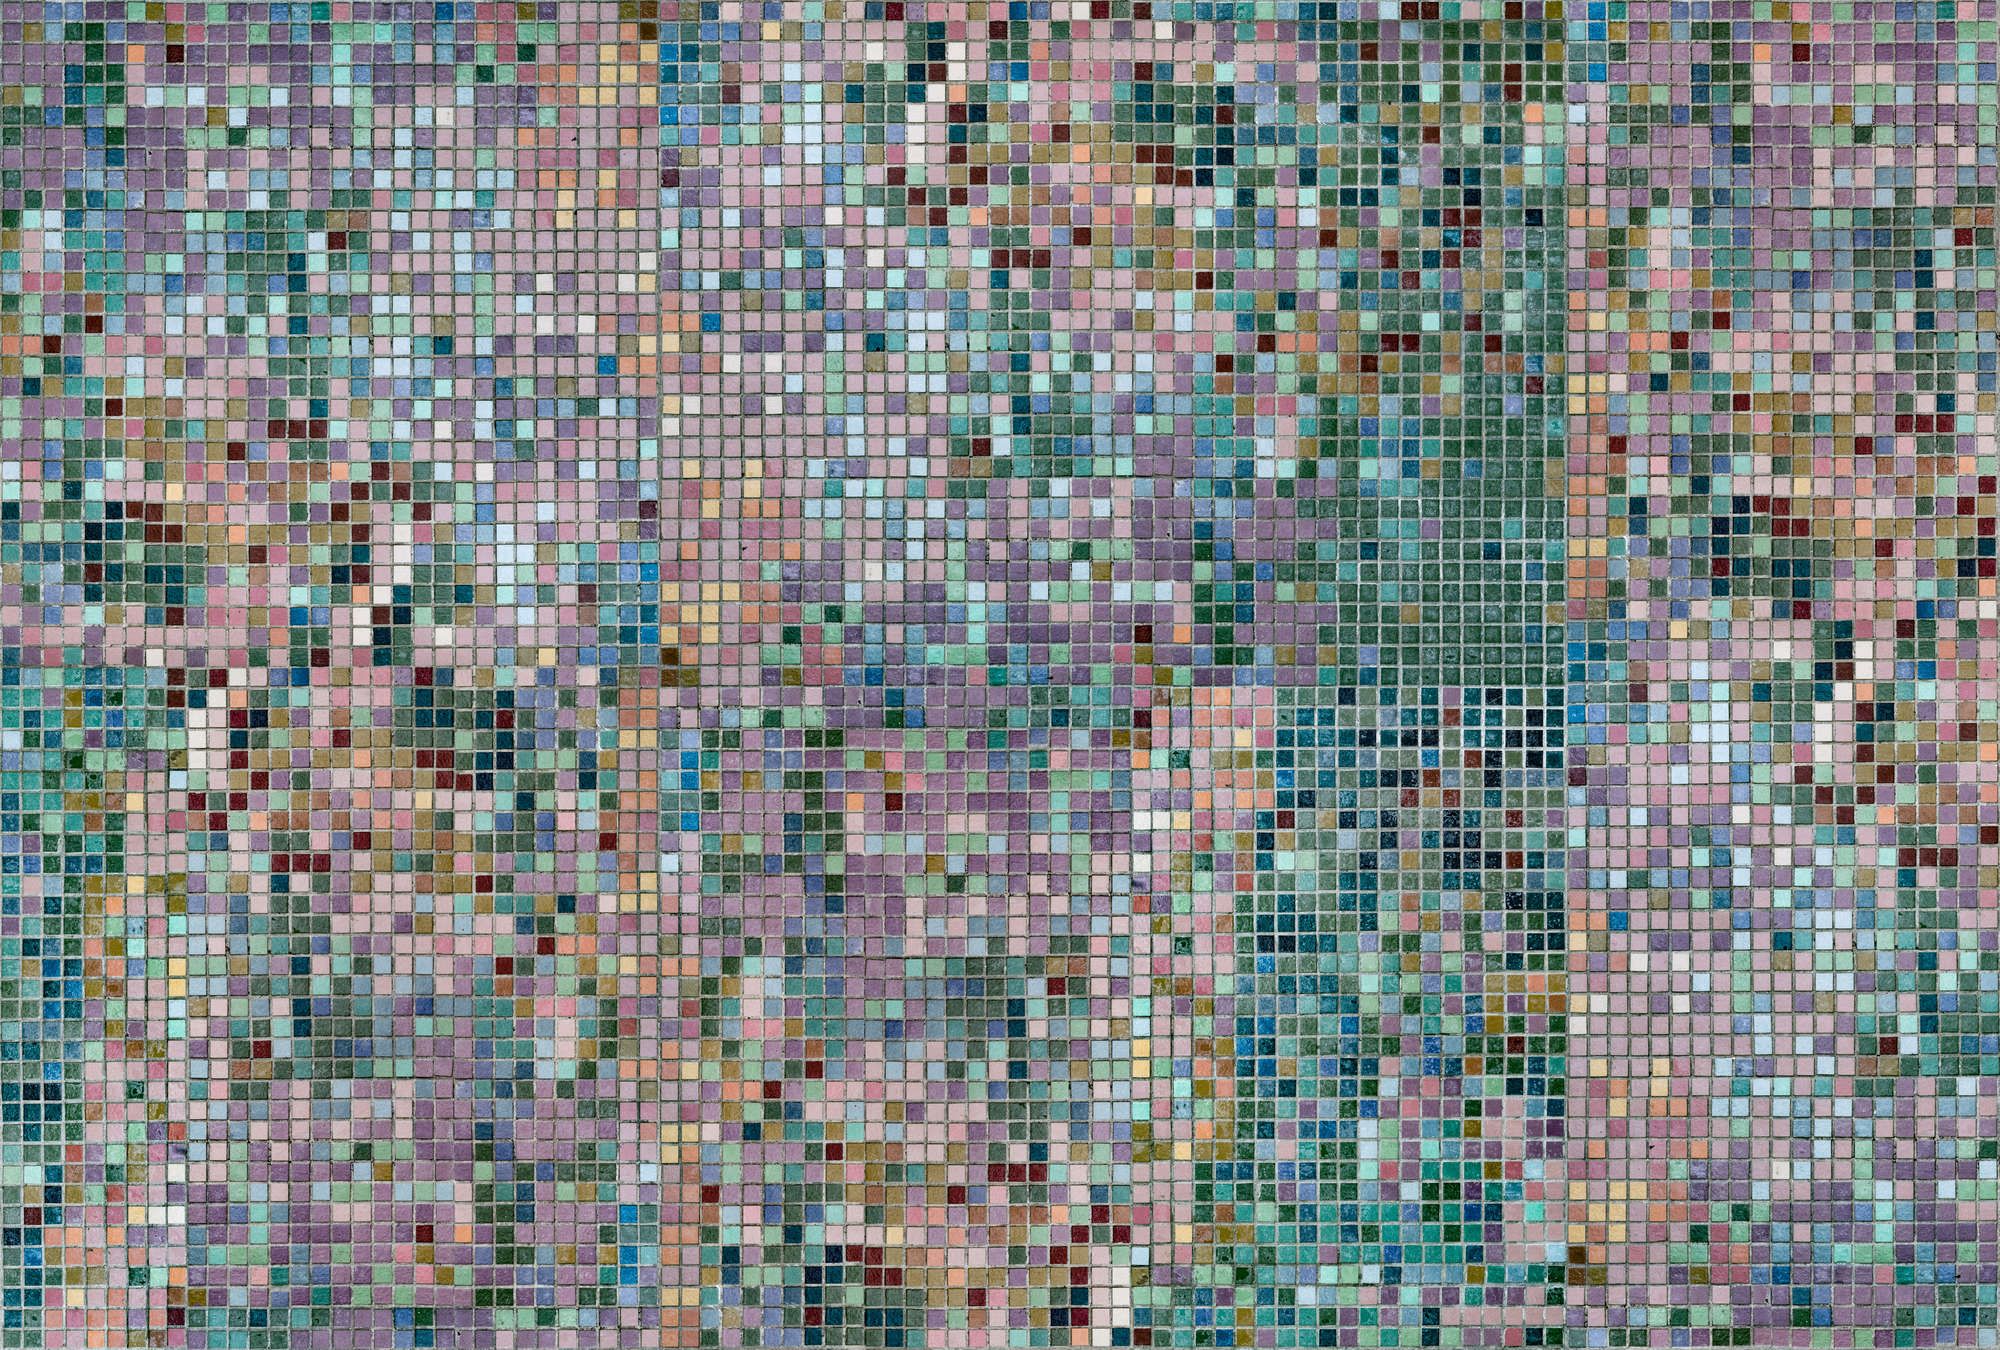             Fotomurali »grand central« - Motivo a mosaico in colori vivaci - Materiali non tessuto opaco e liscio
        